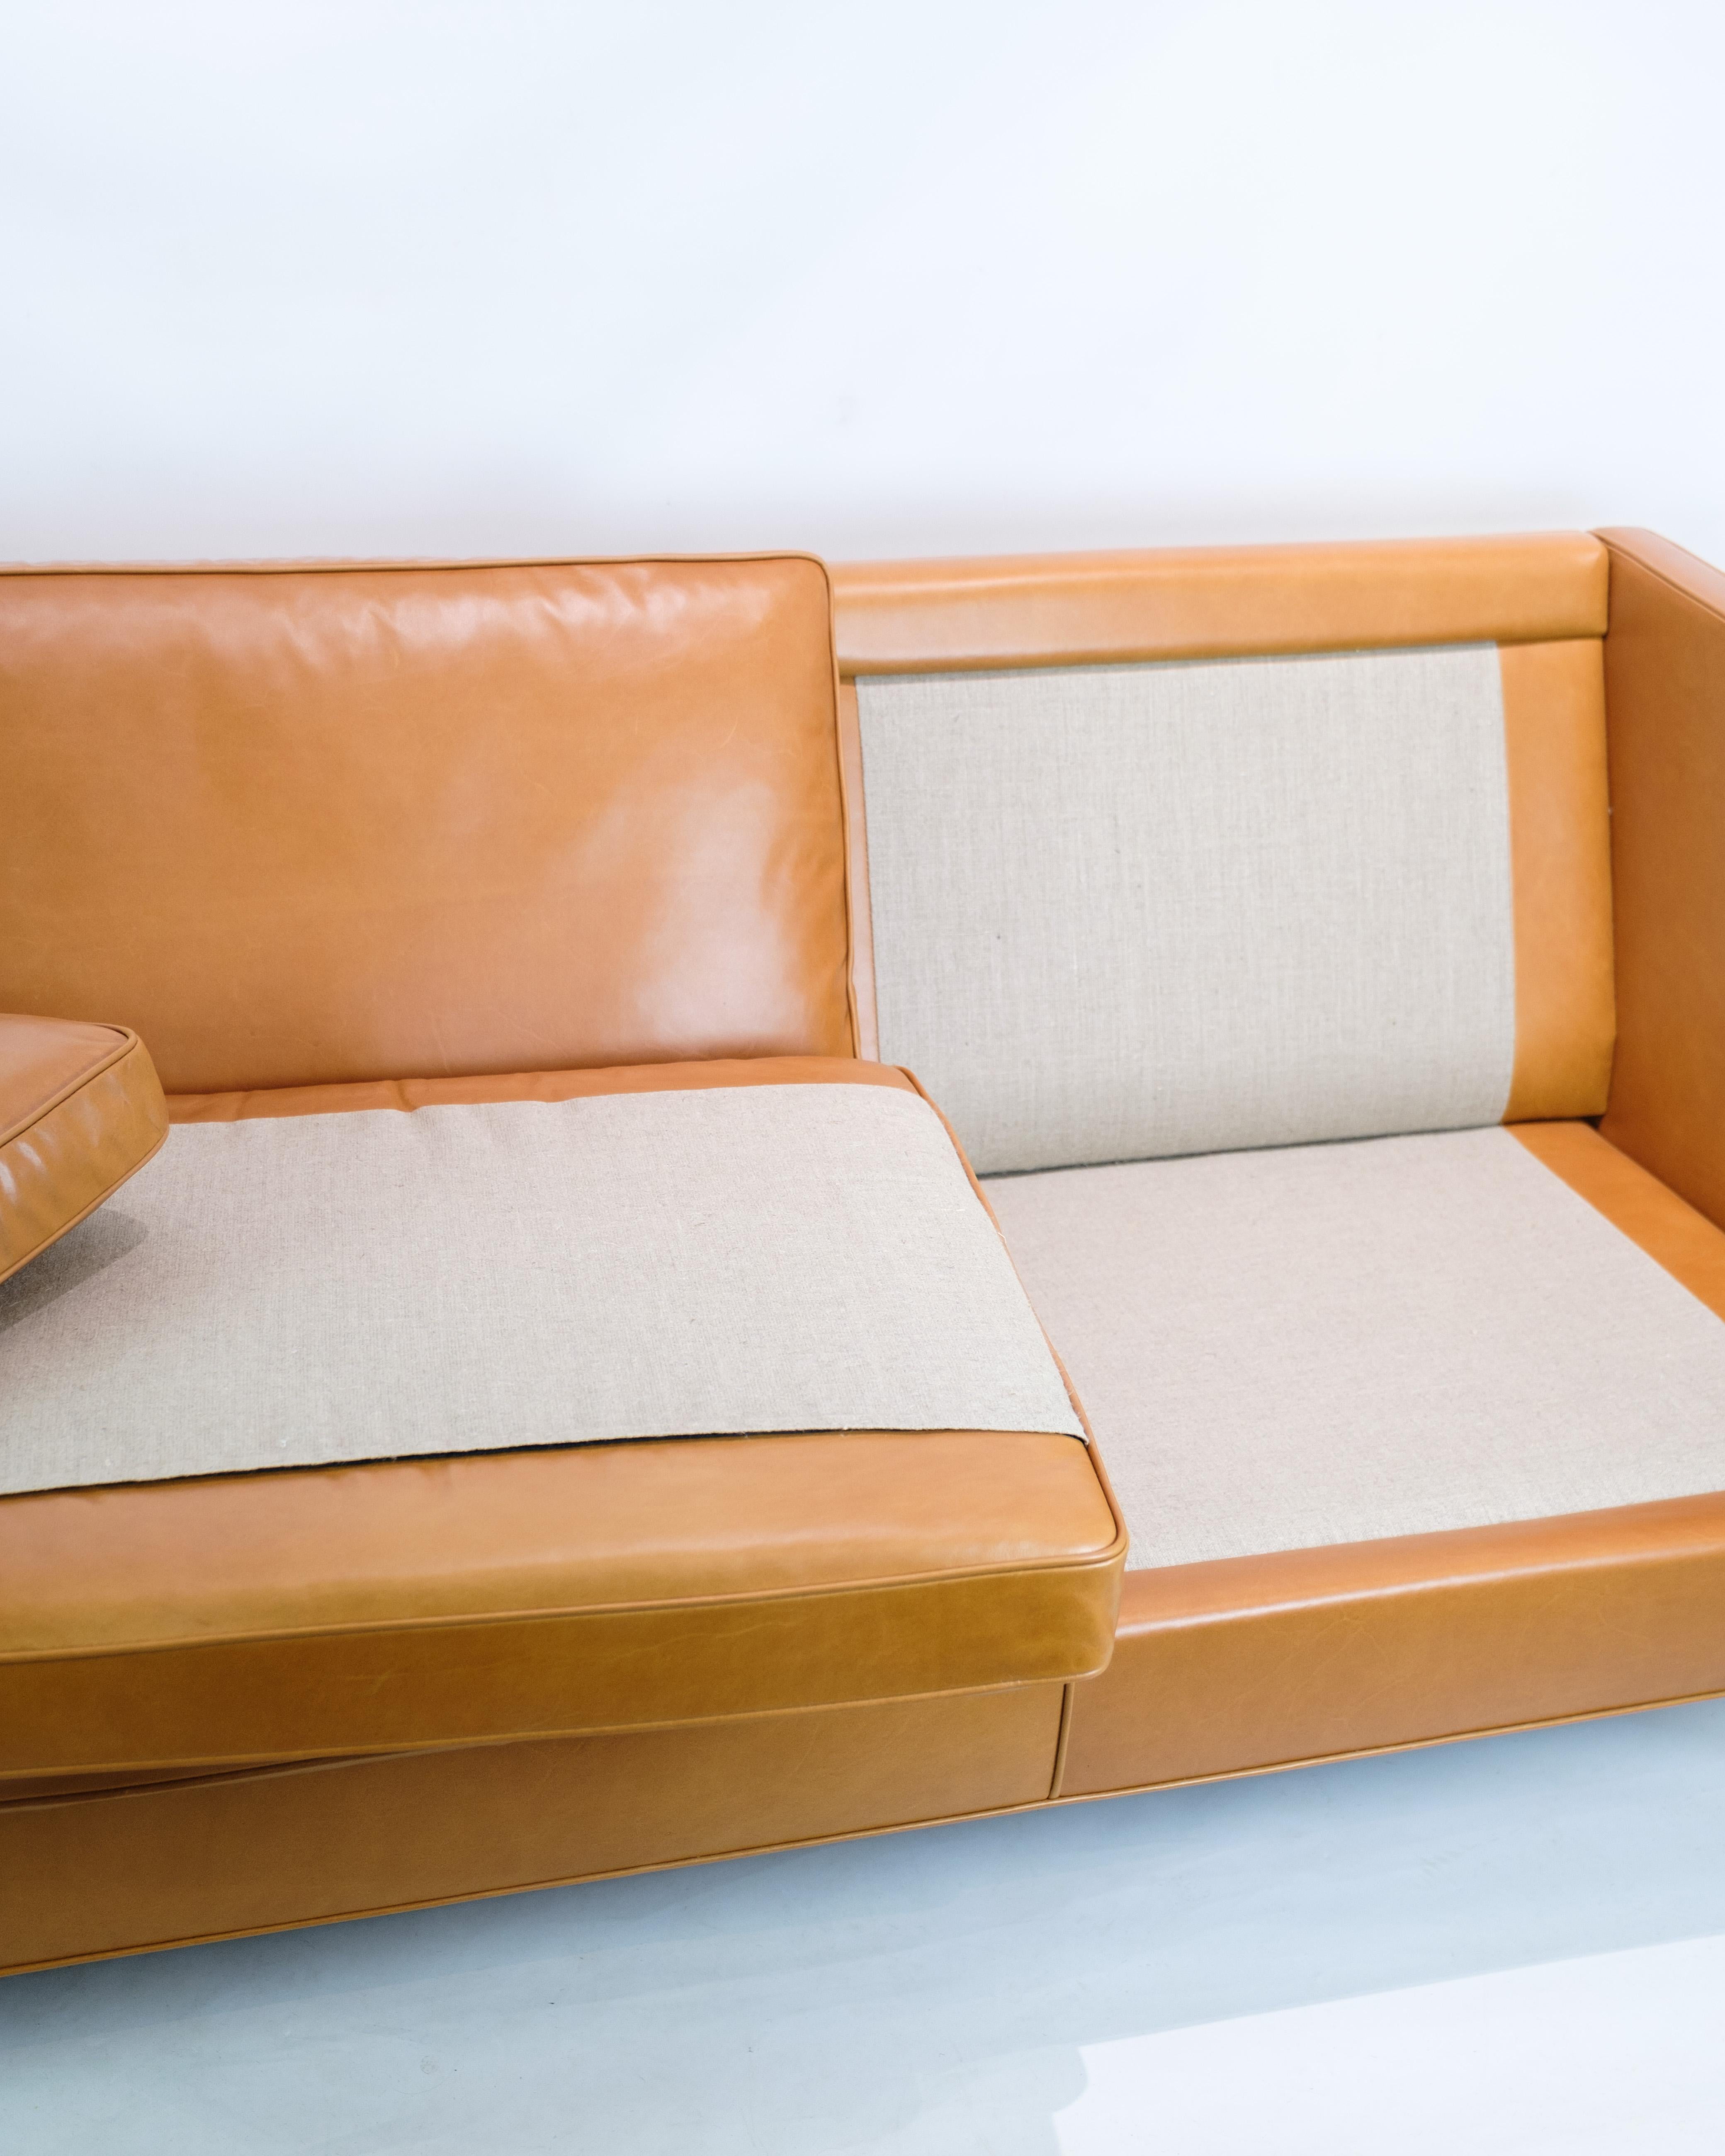 Le canapé 3 places, modèle 2333, conçu par Børge Mogensen et produit par Fredericia Furniture dans les années 1960, est une source d'inspiration et d'élégance. Le canapé est doté d'un revêtement en cuir de cognac bleu, ce qui lui confère une